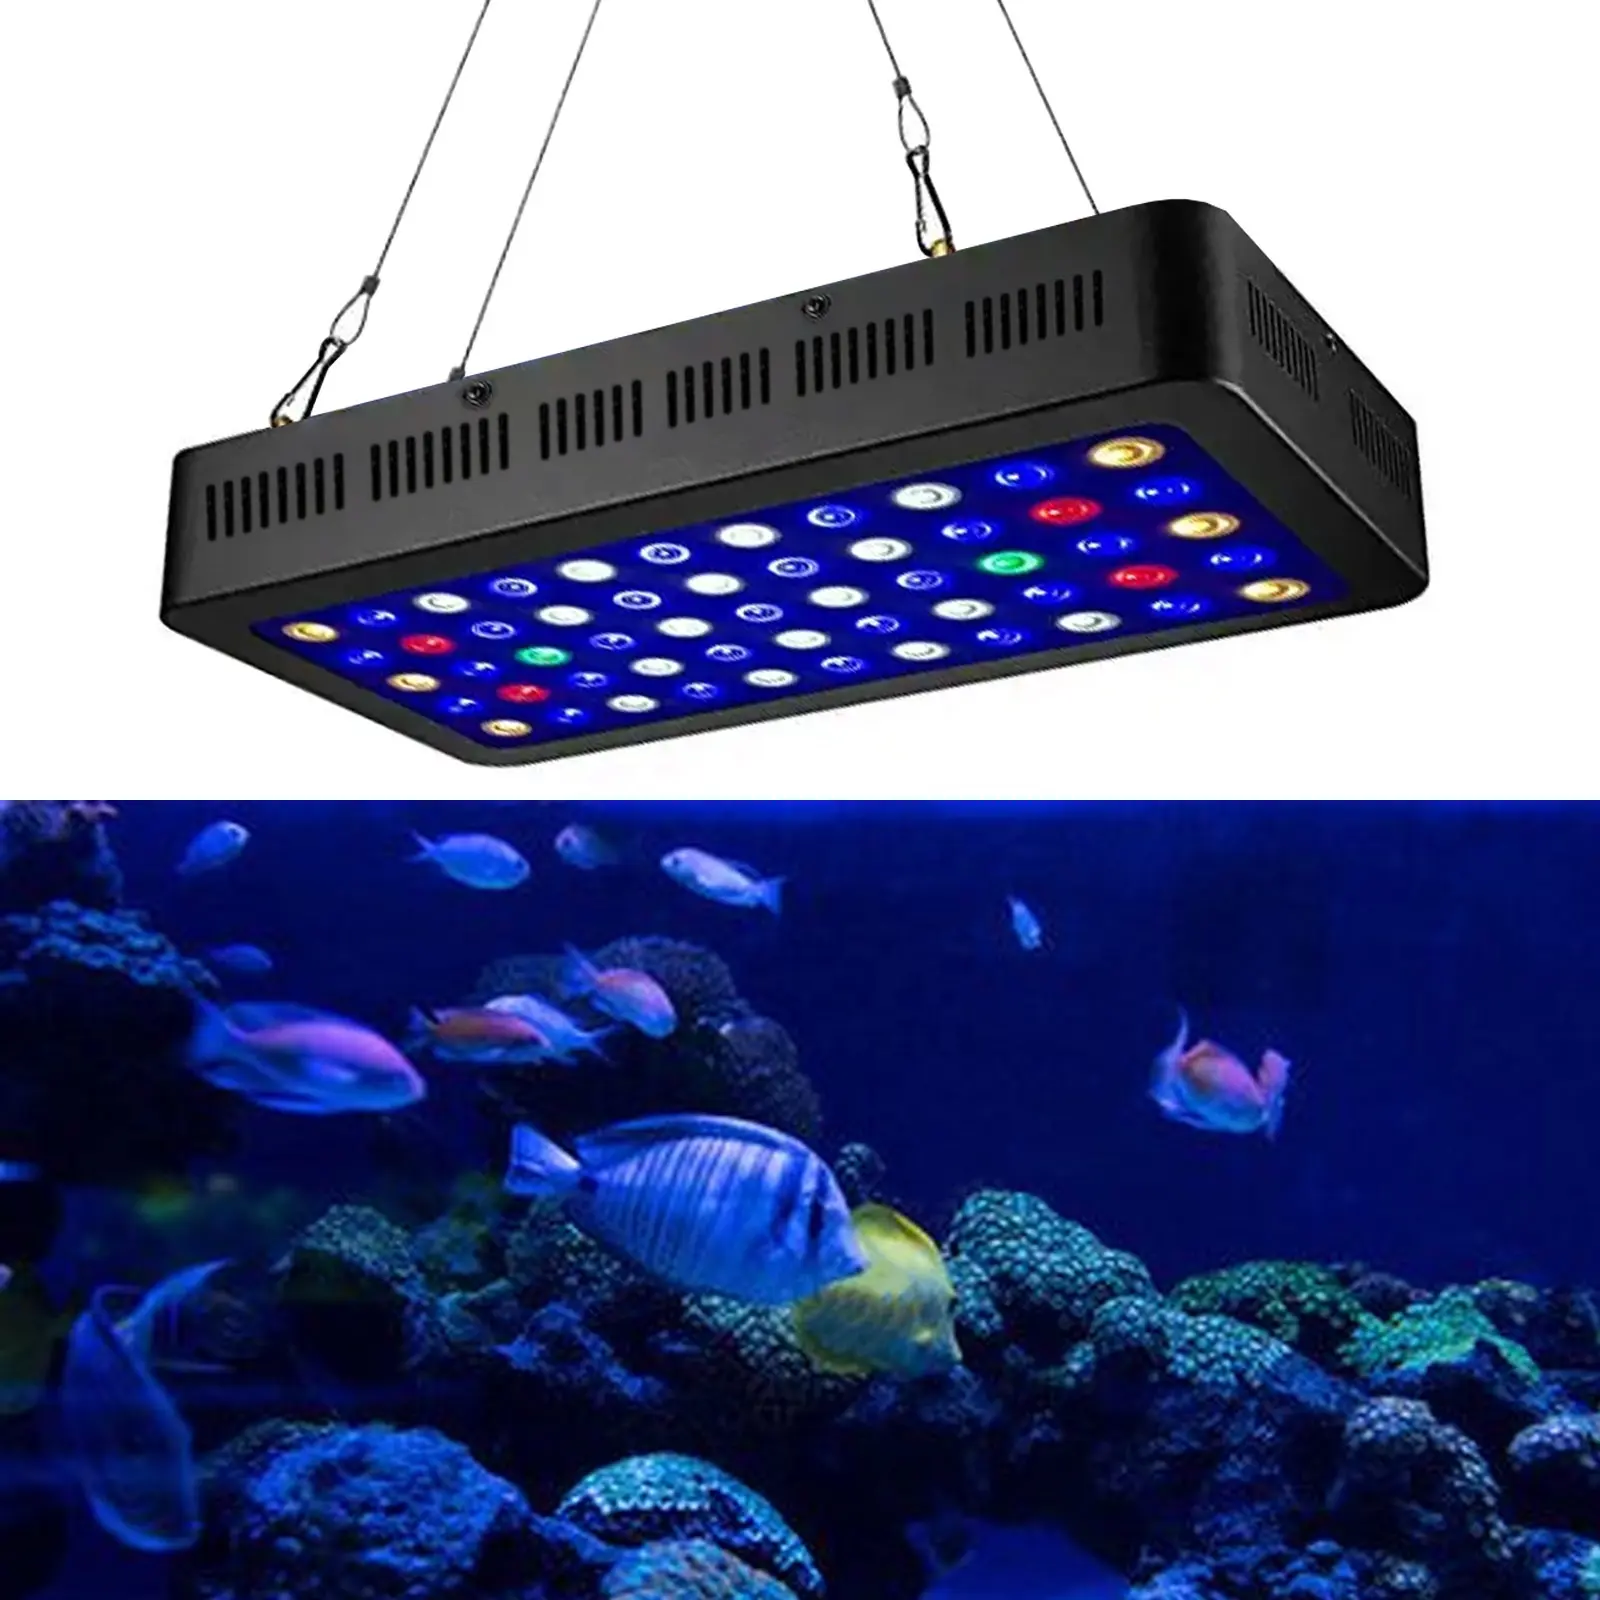 Liweida 2 मंद और 2 स्विच पूर्ण स्पेक्ट्रम पैनल wrgb मछलीघर रोशनी का नेतृत्व किया 3w * 55pcs शीट धातु समुद्री मूंगा नमक और पानी दीपक के लिए